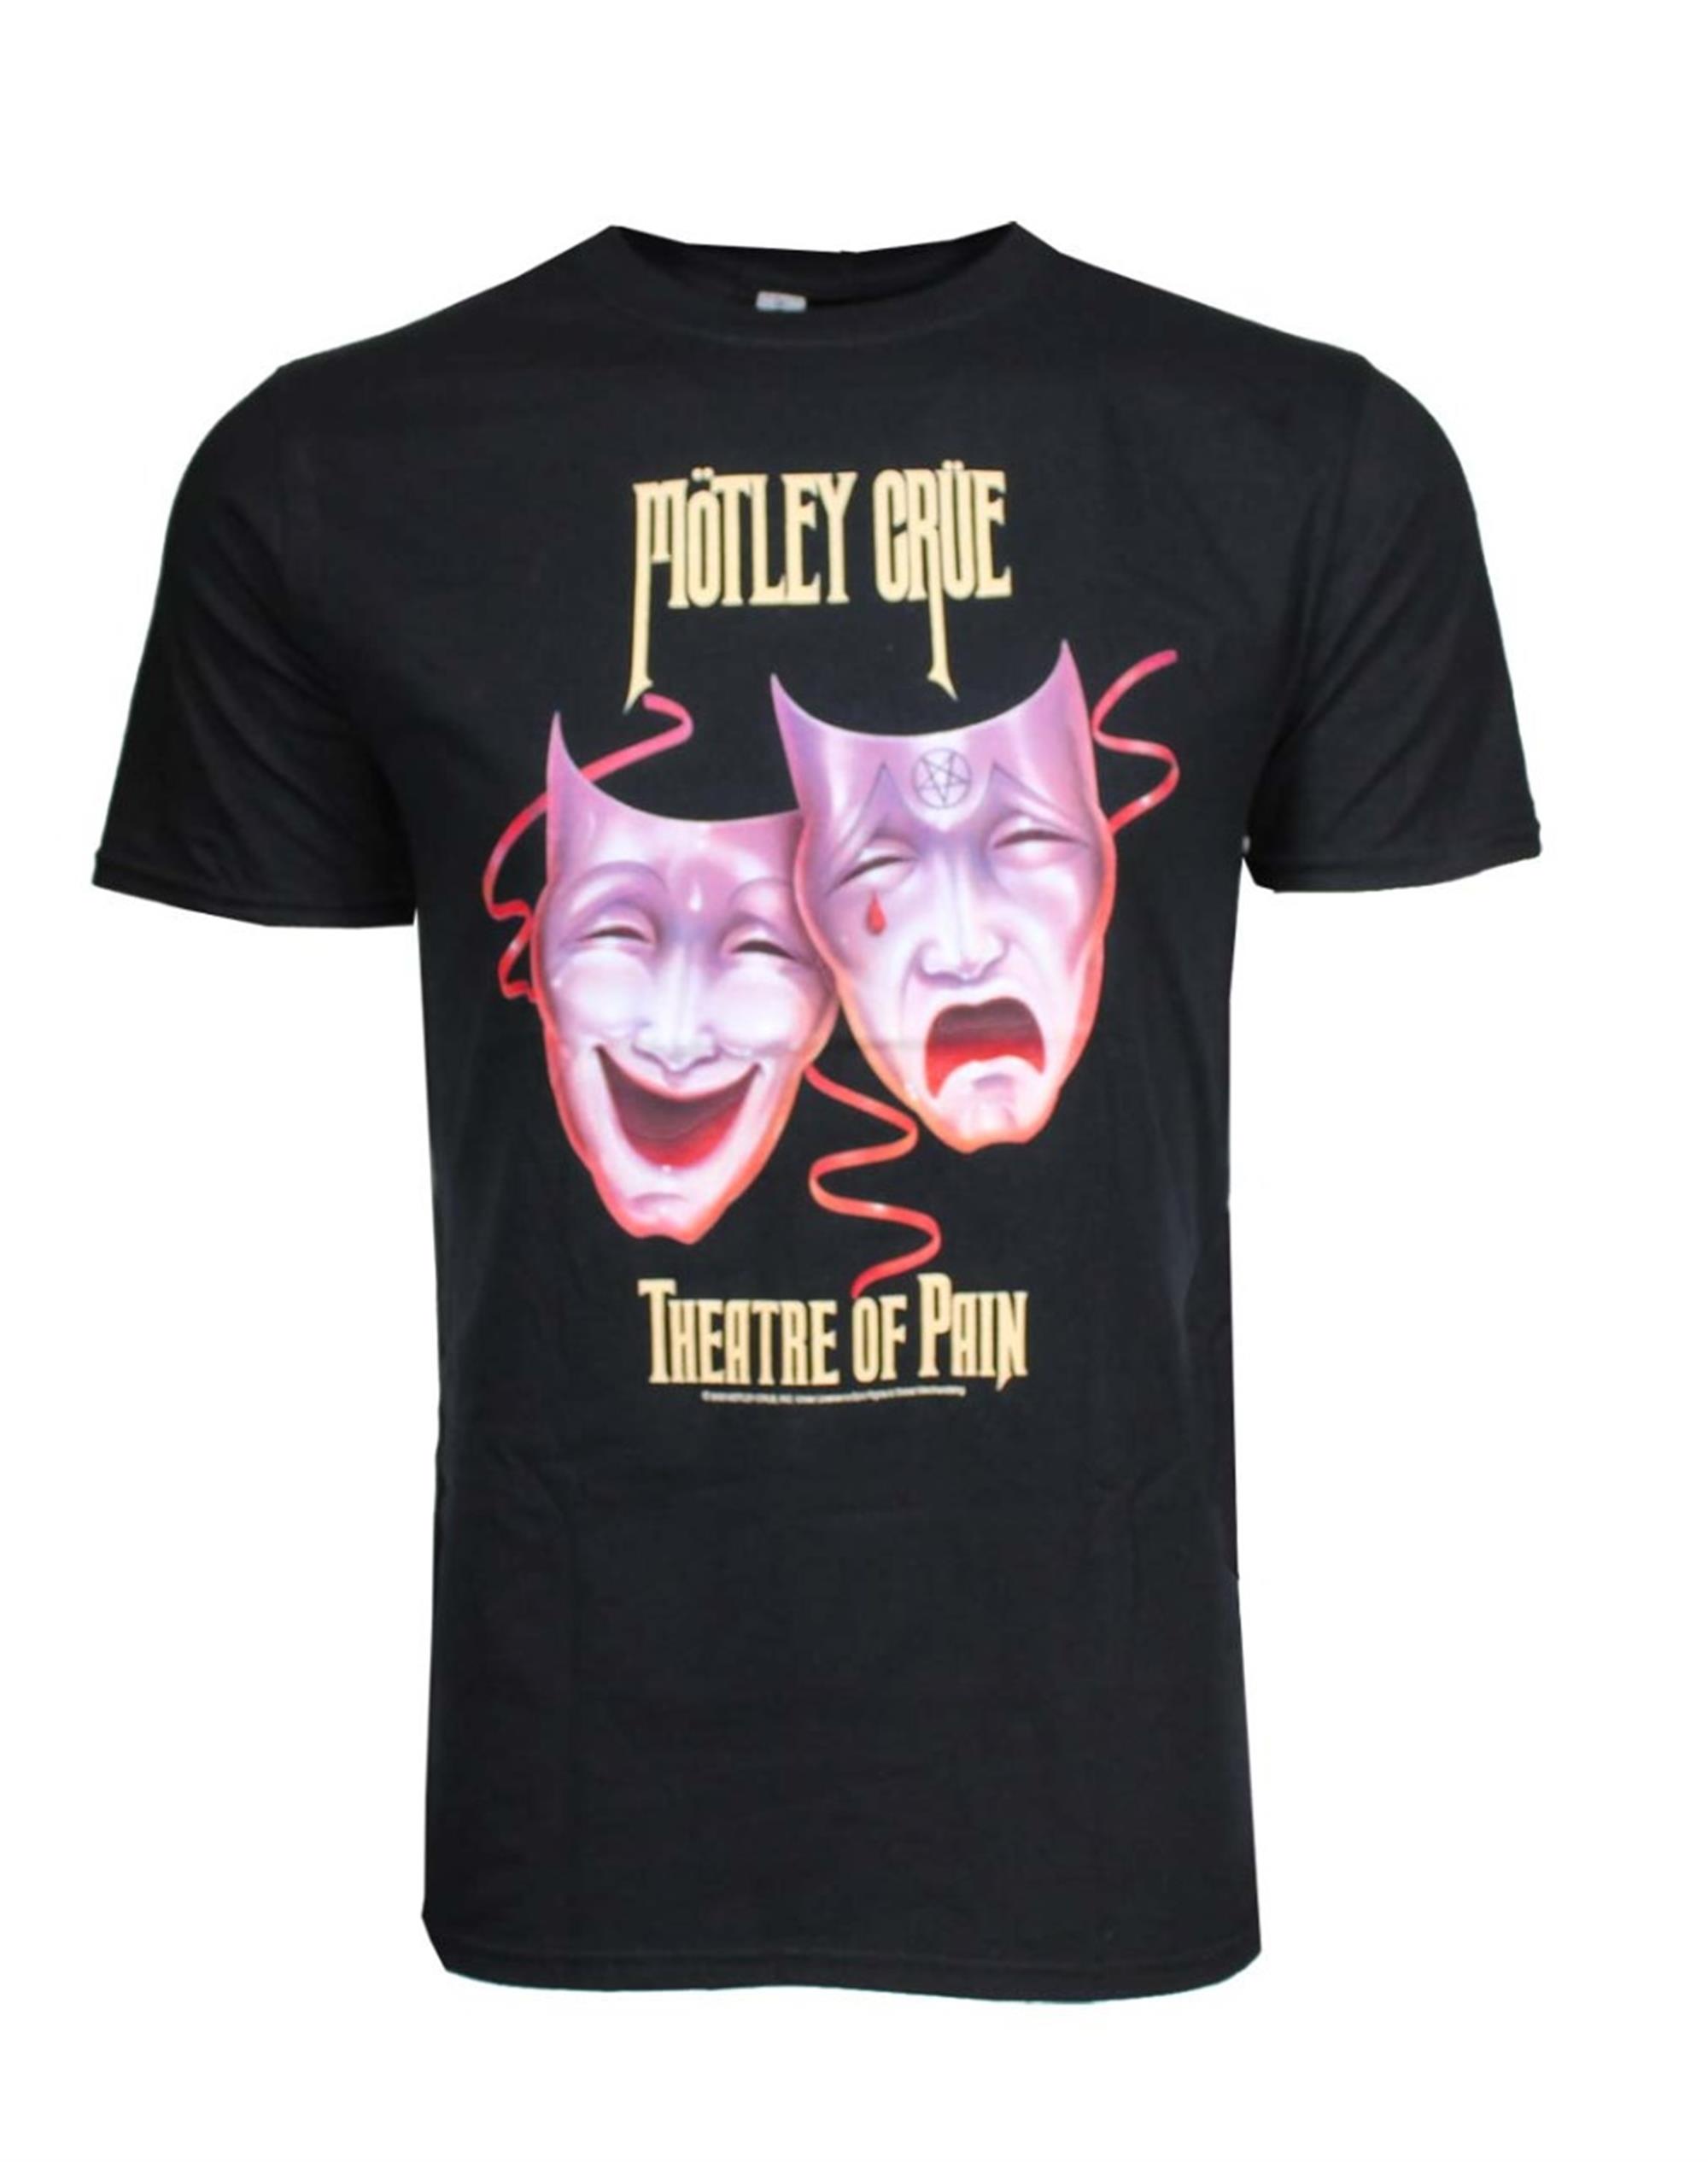 Motley Crue Theatre of Pain T-Shirt